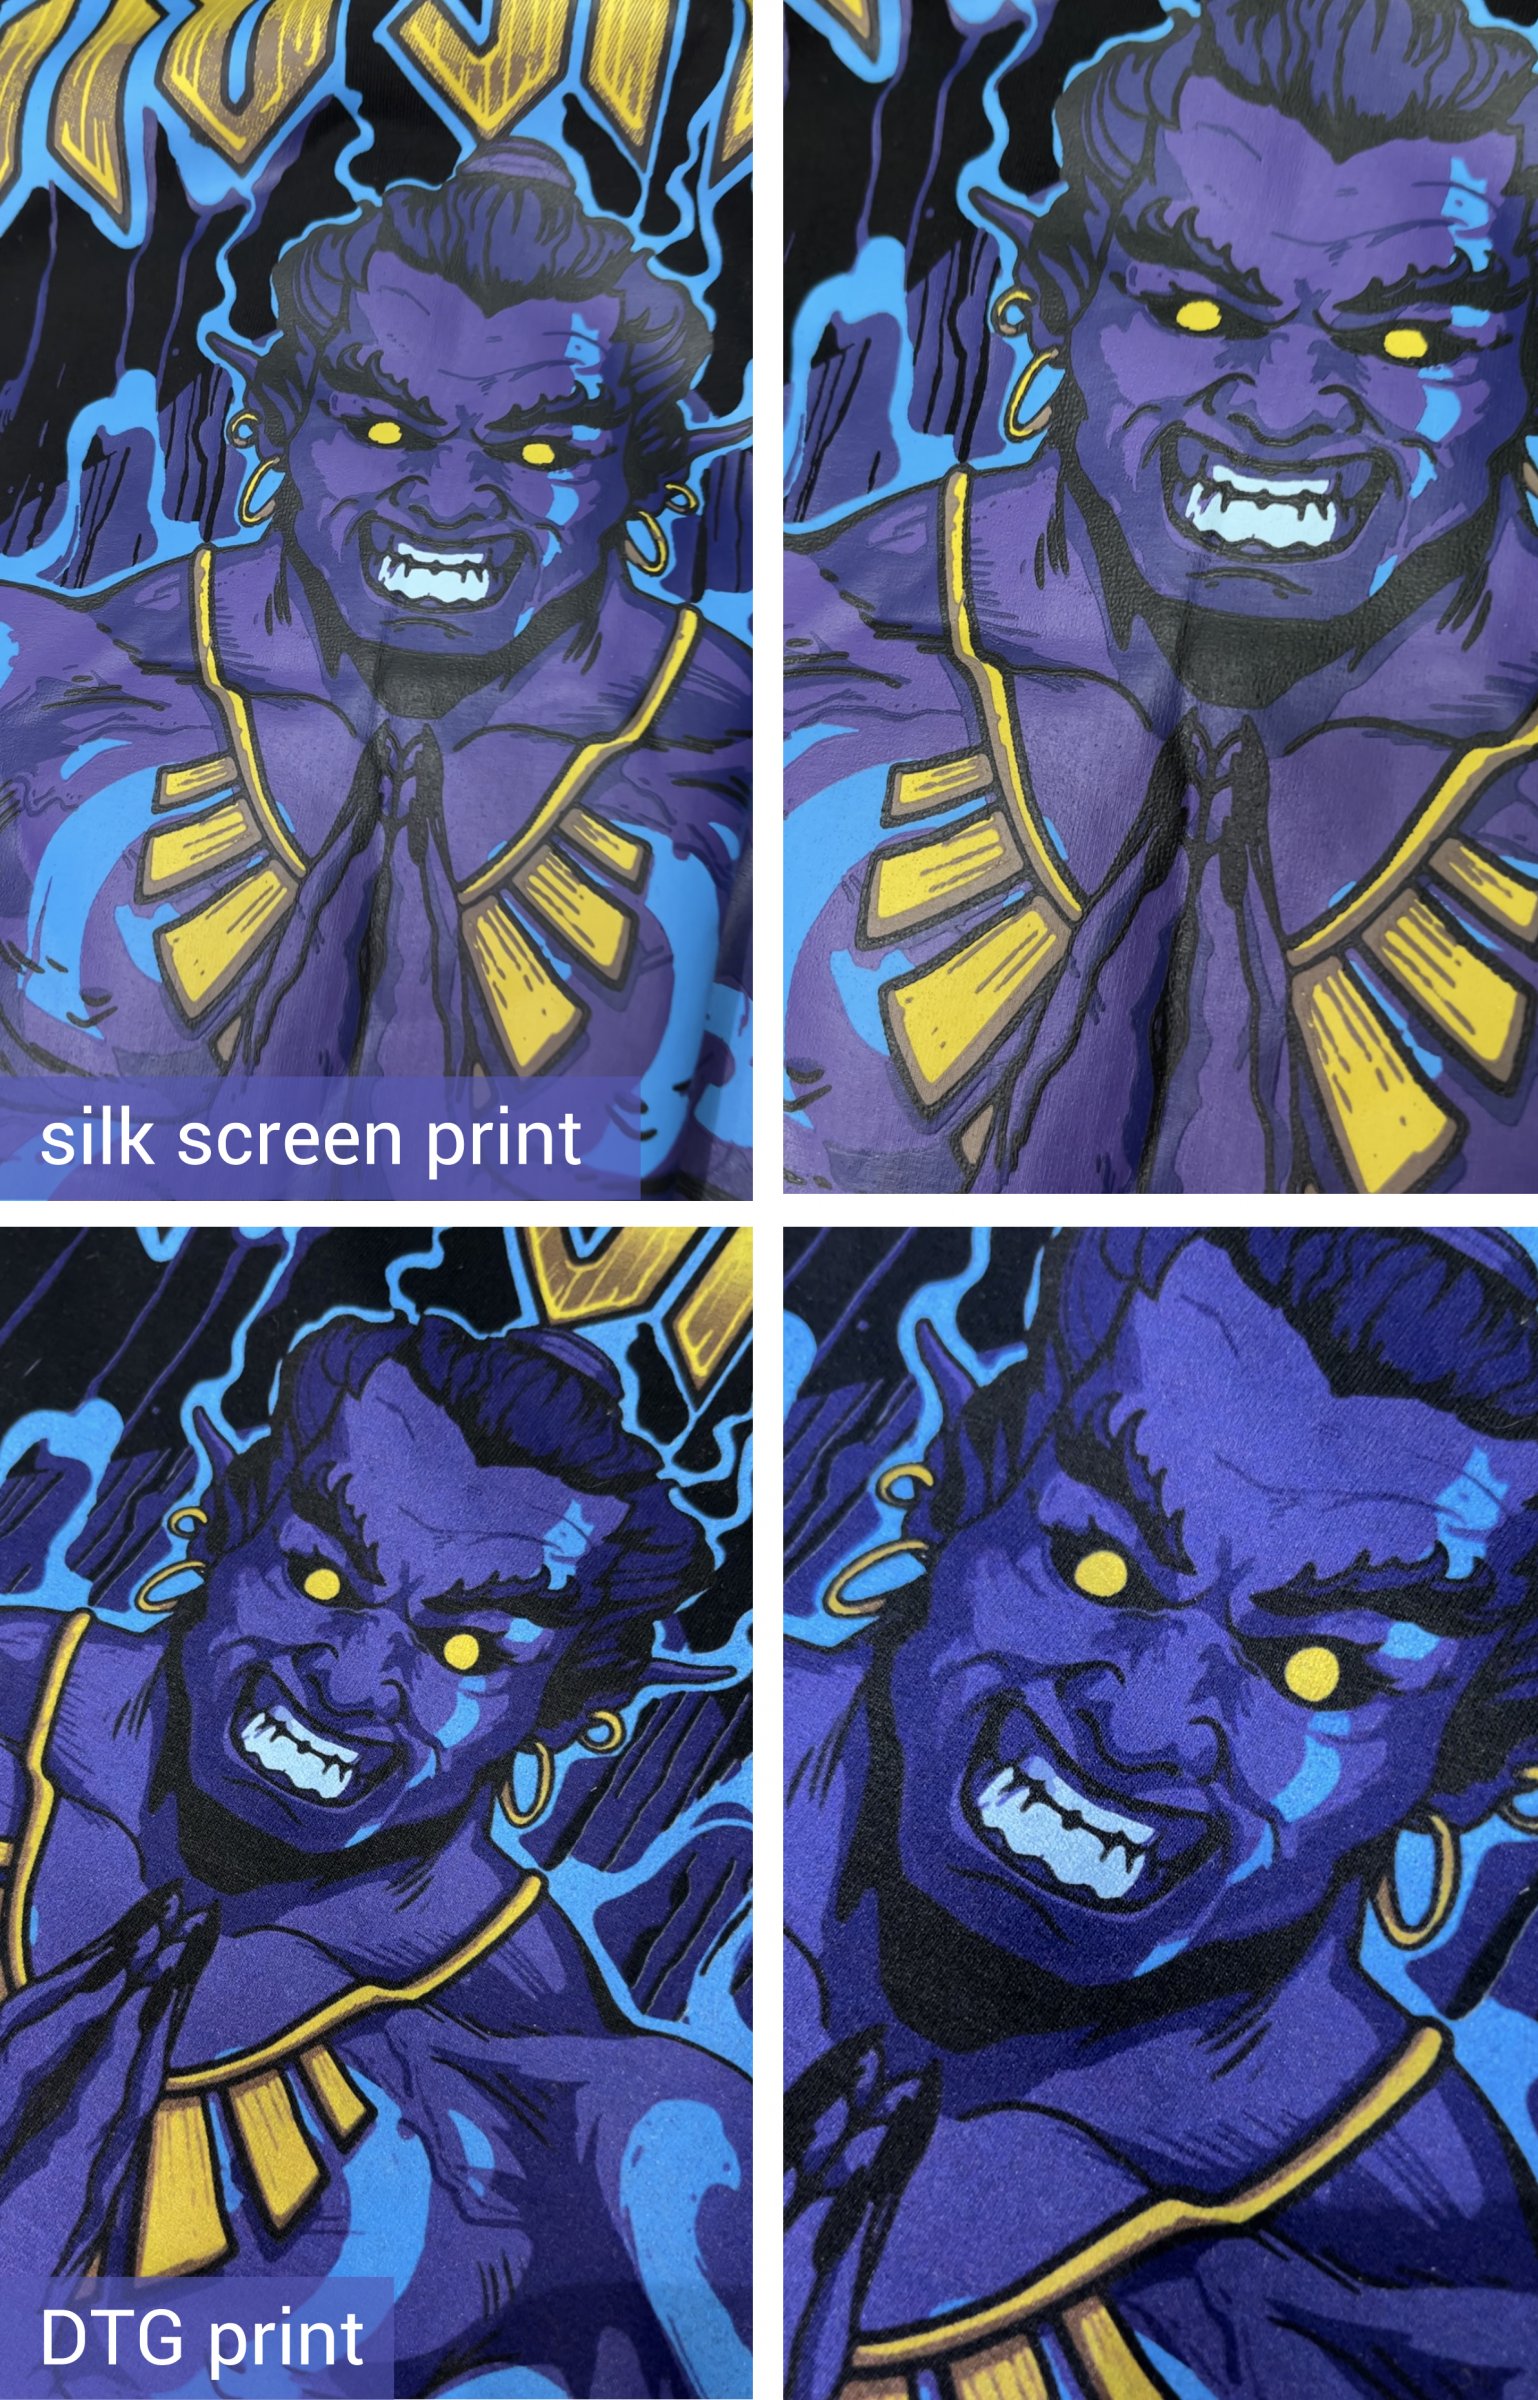 silk screen printing vs dtg printing